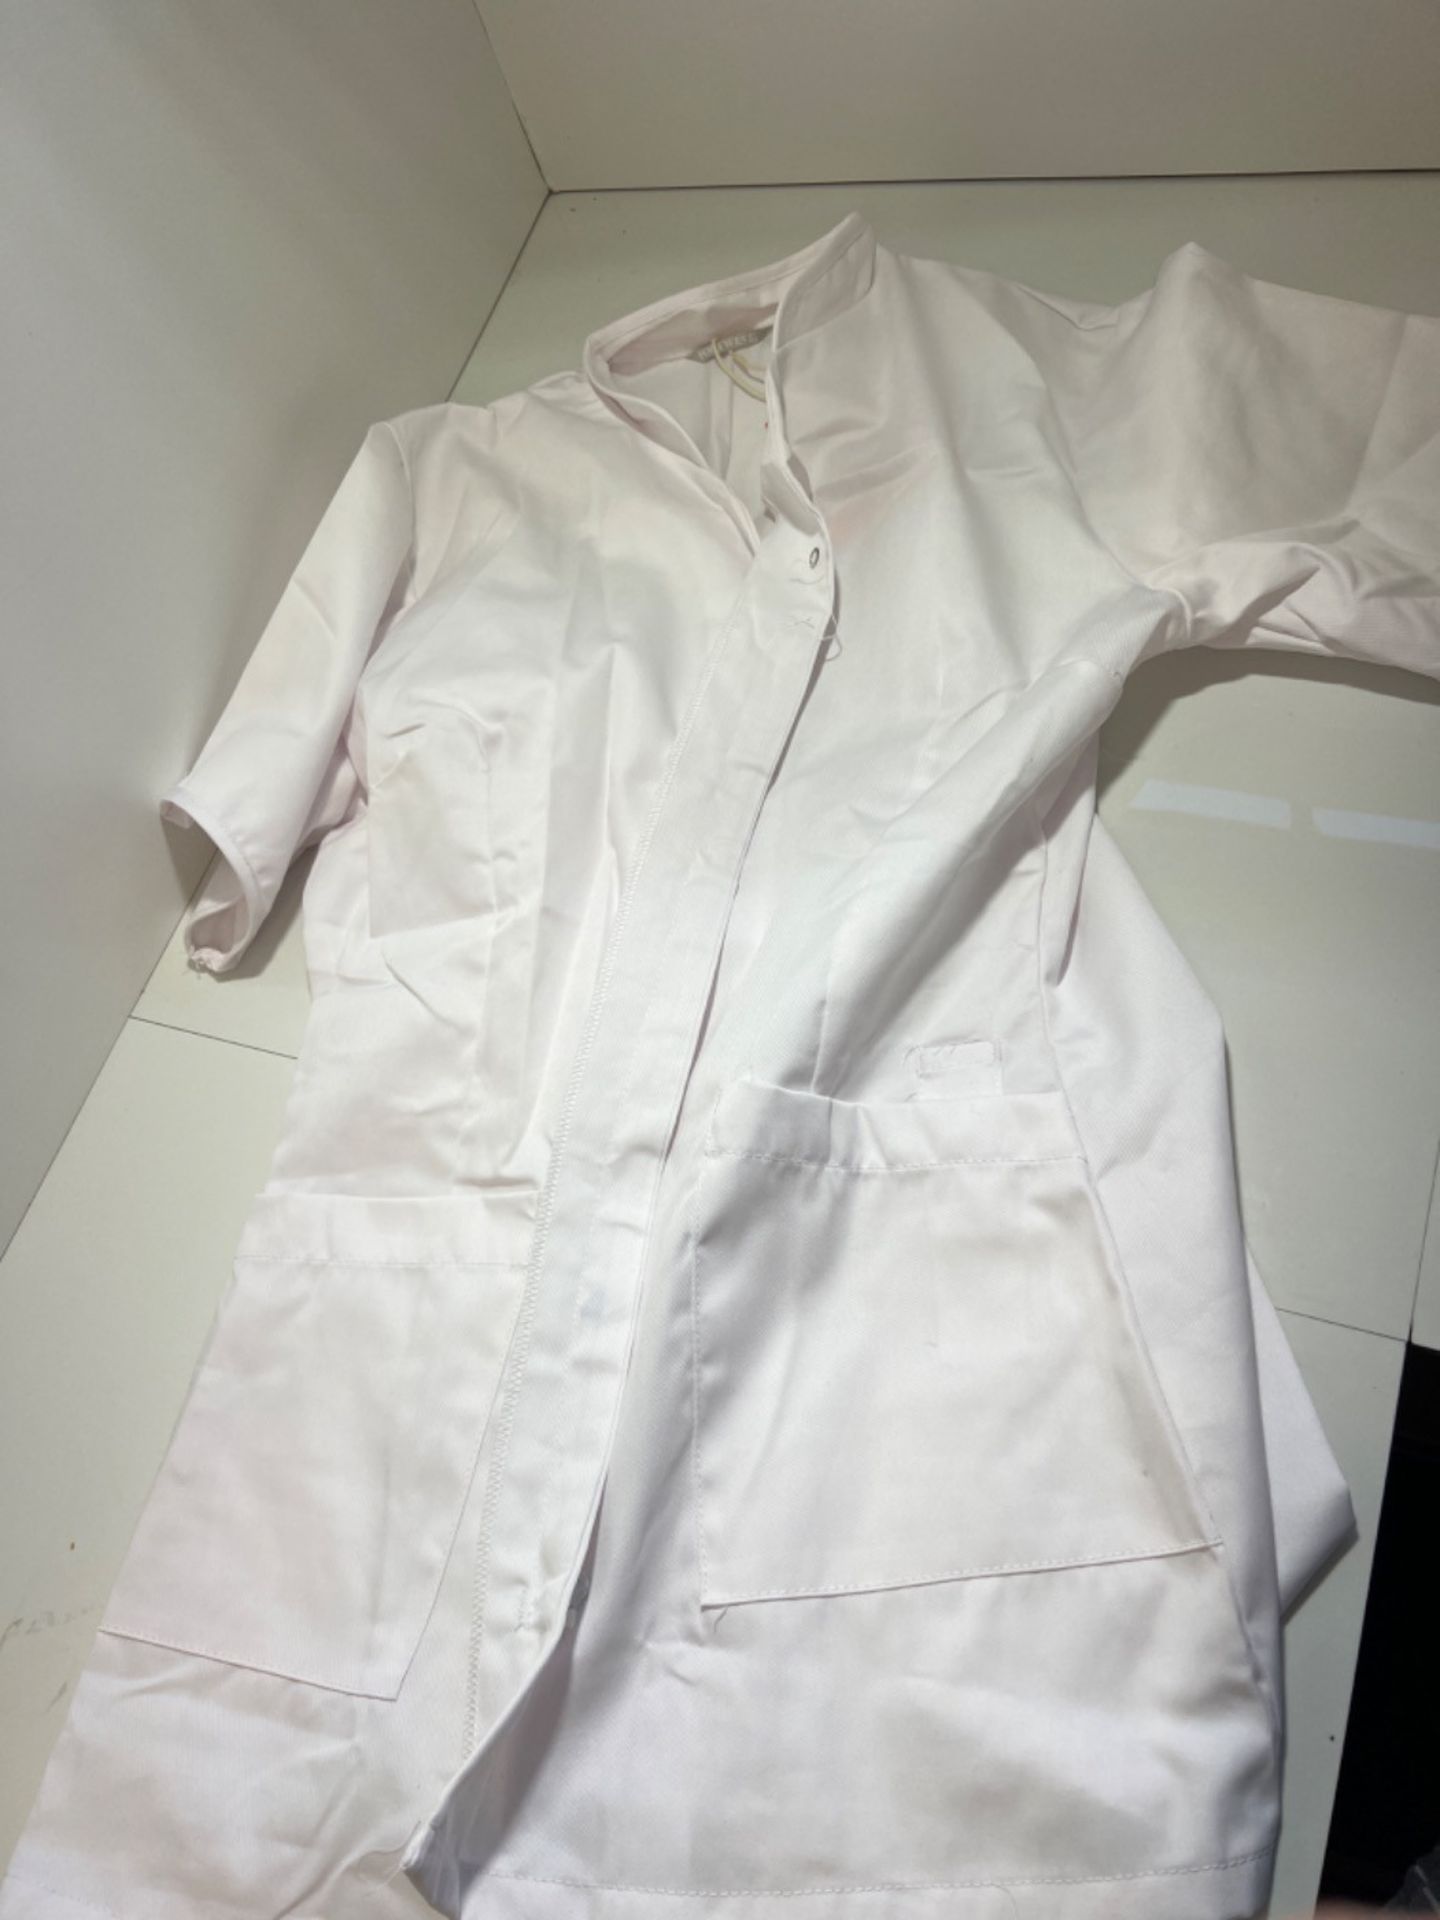 Portwest Premier Tunic, Size: L, Colour: White, LW12WHRL - Image 3 of 3